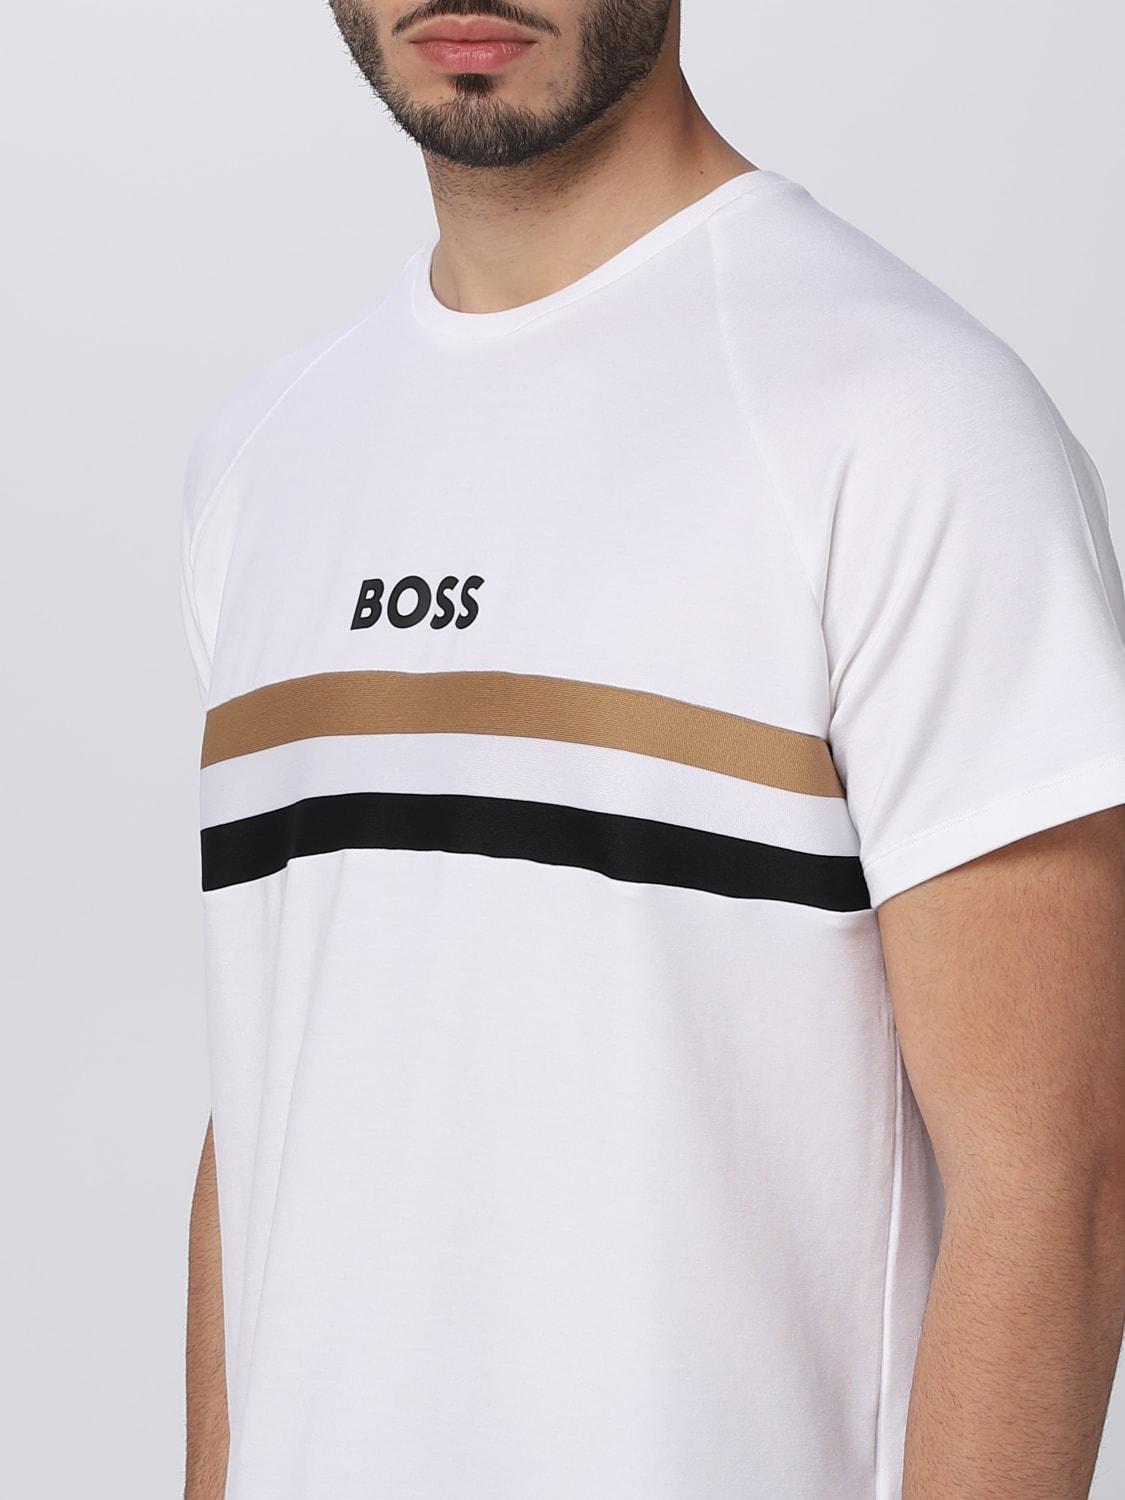 Virksomhedsbeskrivelse Indtil nu ordlyd BOSS: t-shirt for man - White | Boss t-shirt 50491487 online on GIGLIO.COM